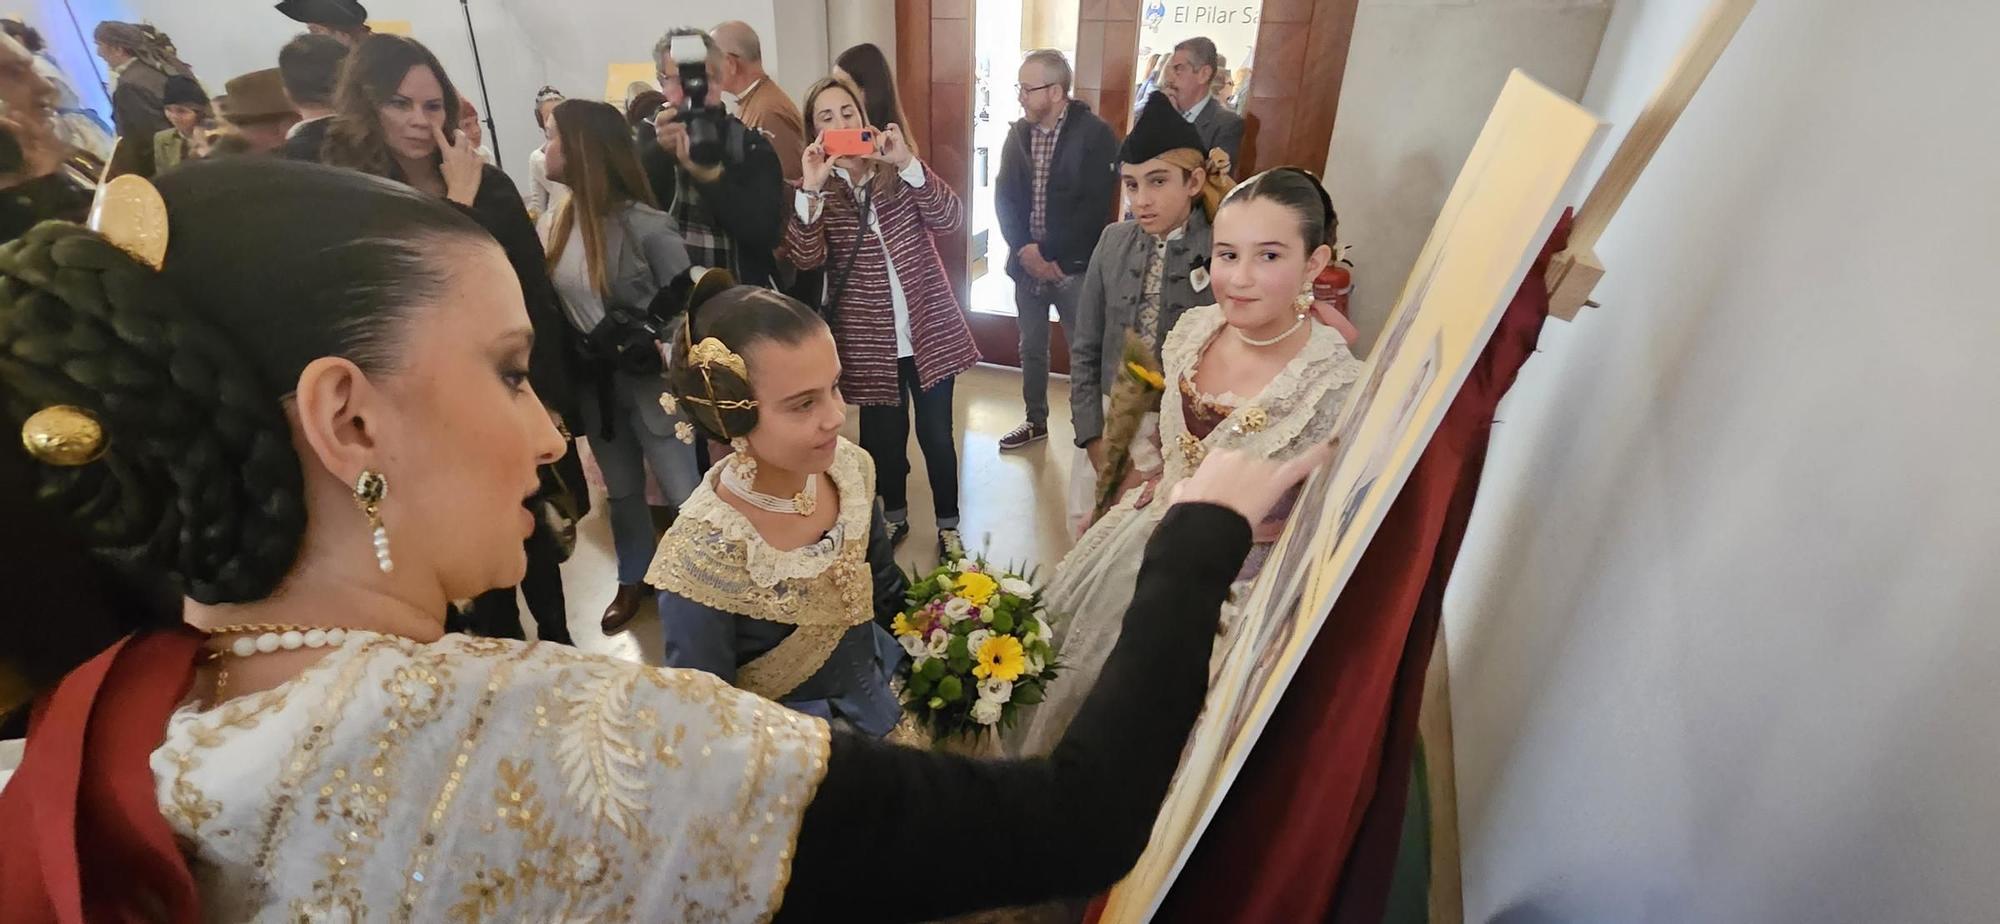 La fiesta de las fallas del Pilar-Sant Francesc con Marina y la corte infantil